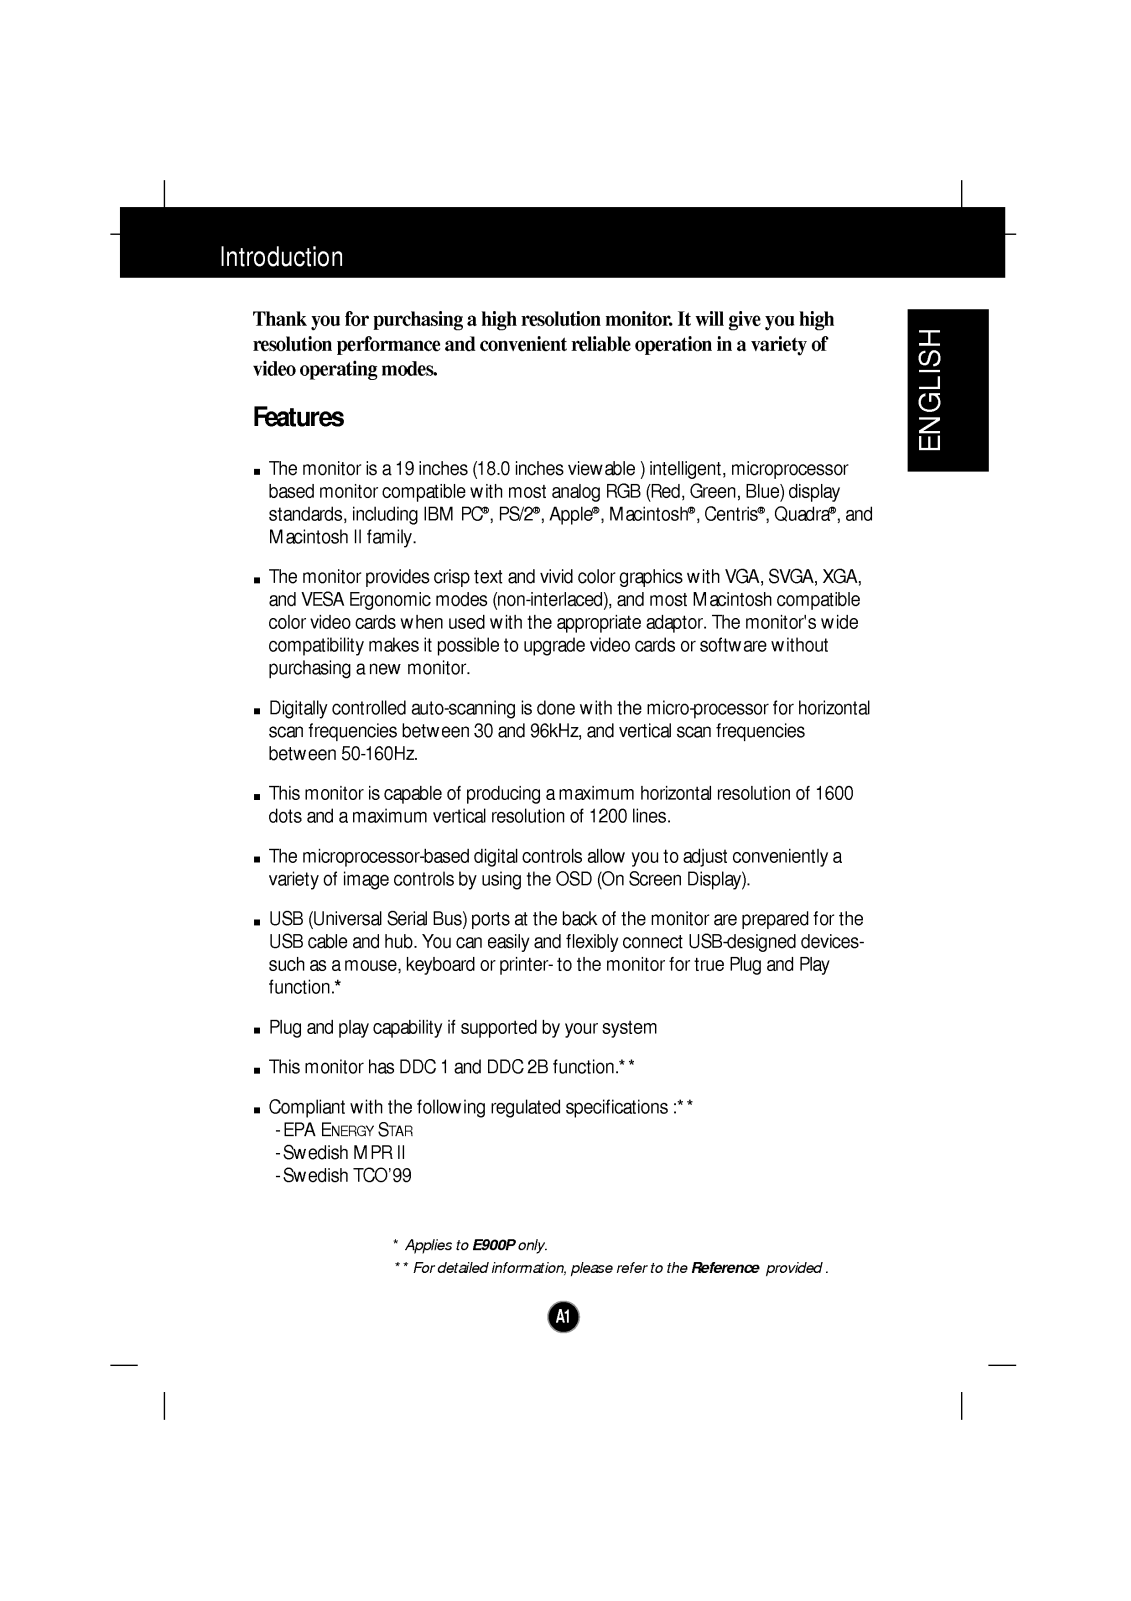 LG E900B-EB990E-EA User Manual